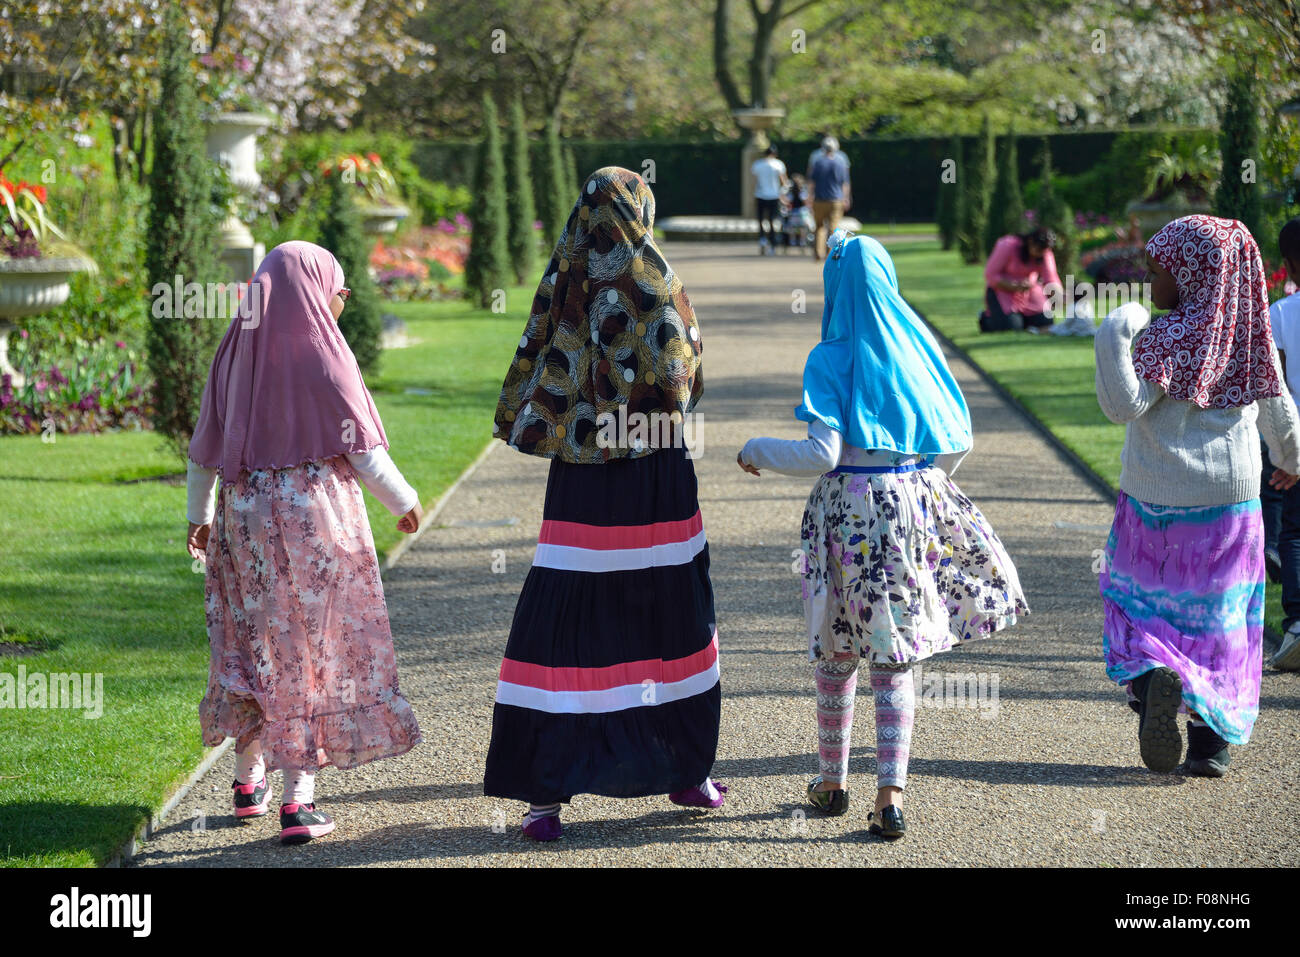 La escuela las niñas musulmanas jóvenes en Queen Mary's Gardens, Regent's Park, London Borough of Camden, Londres, Inglaterra, Reino Unido Foto de stock